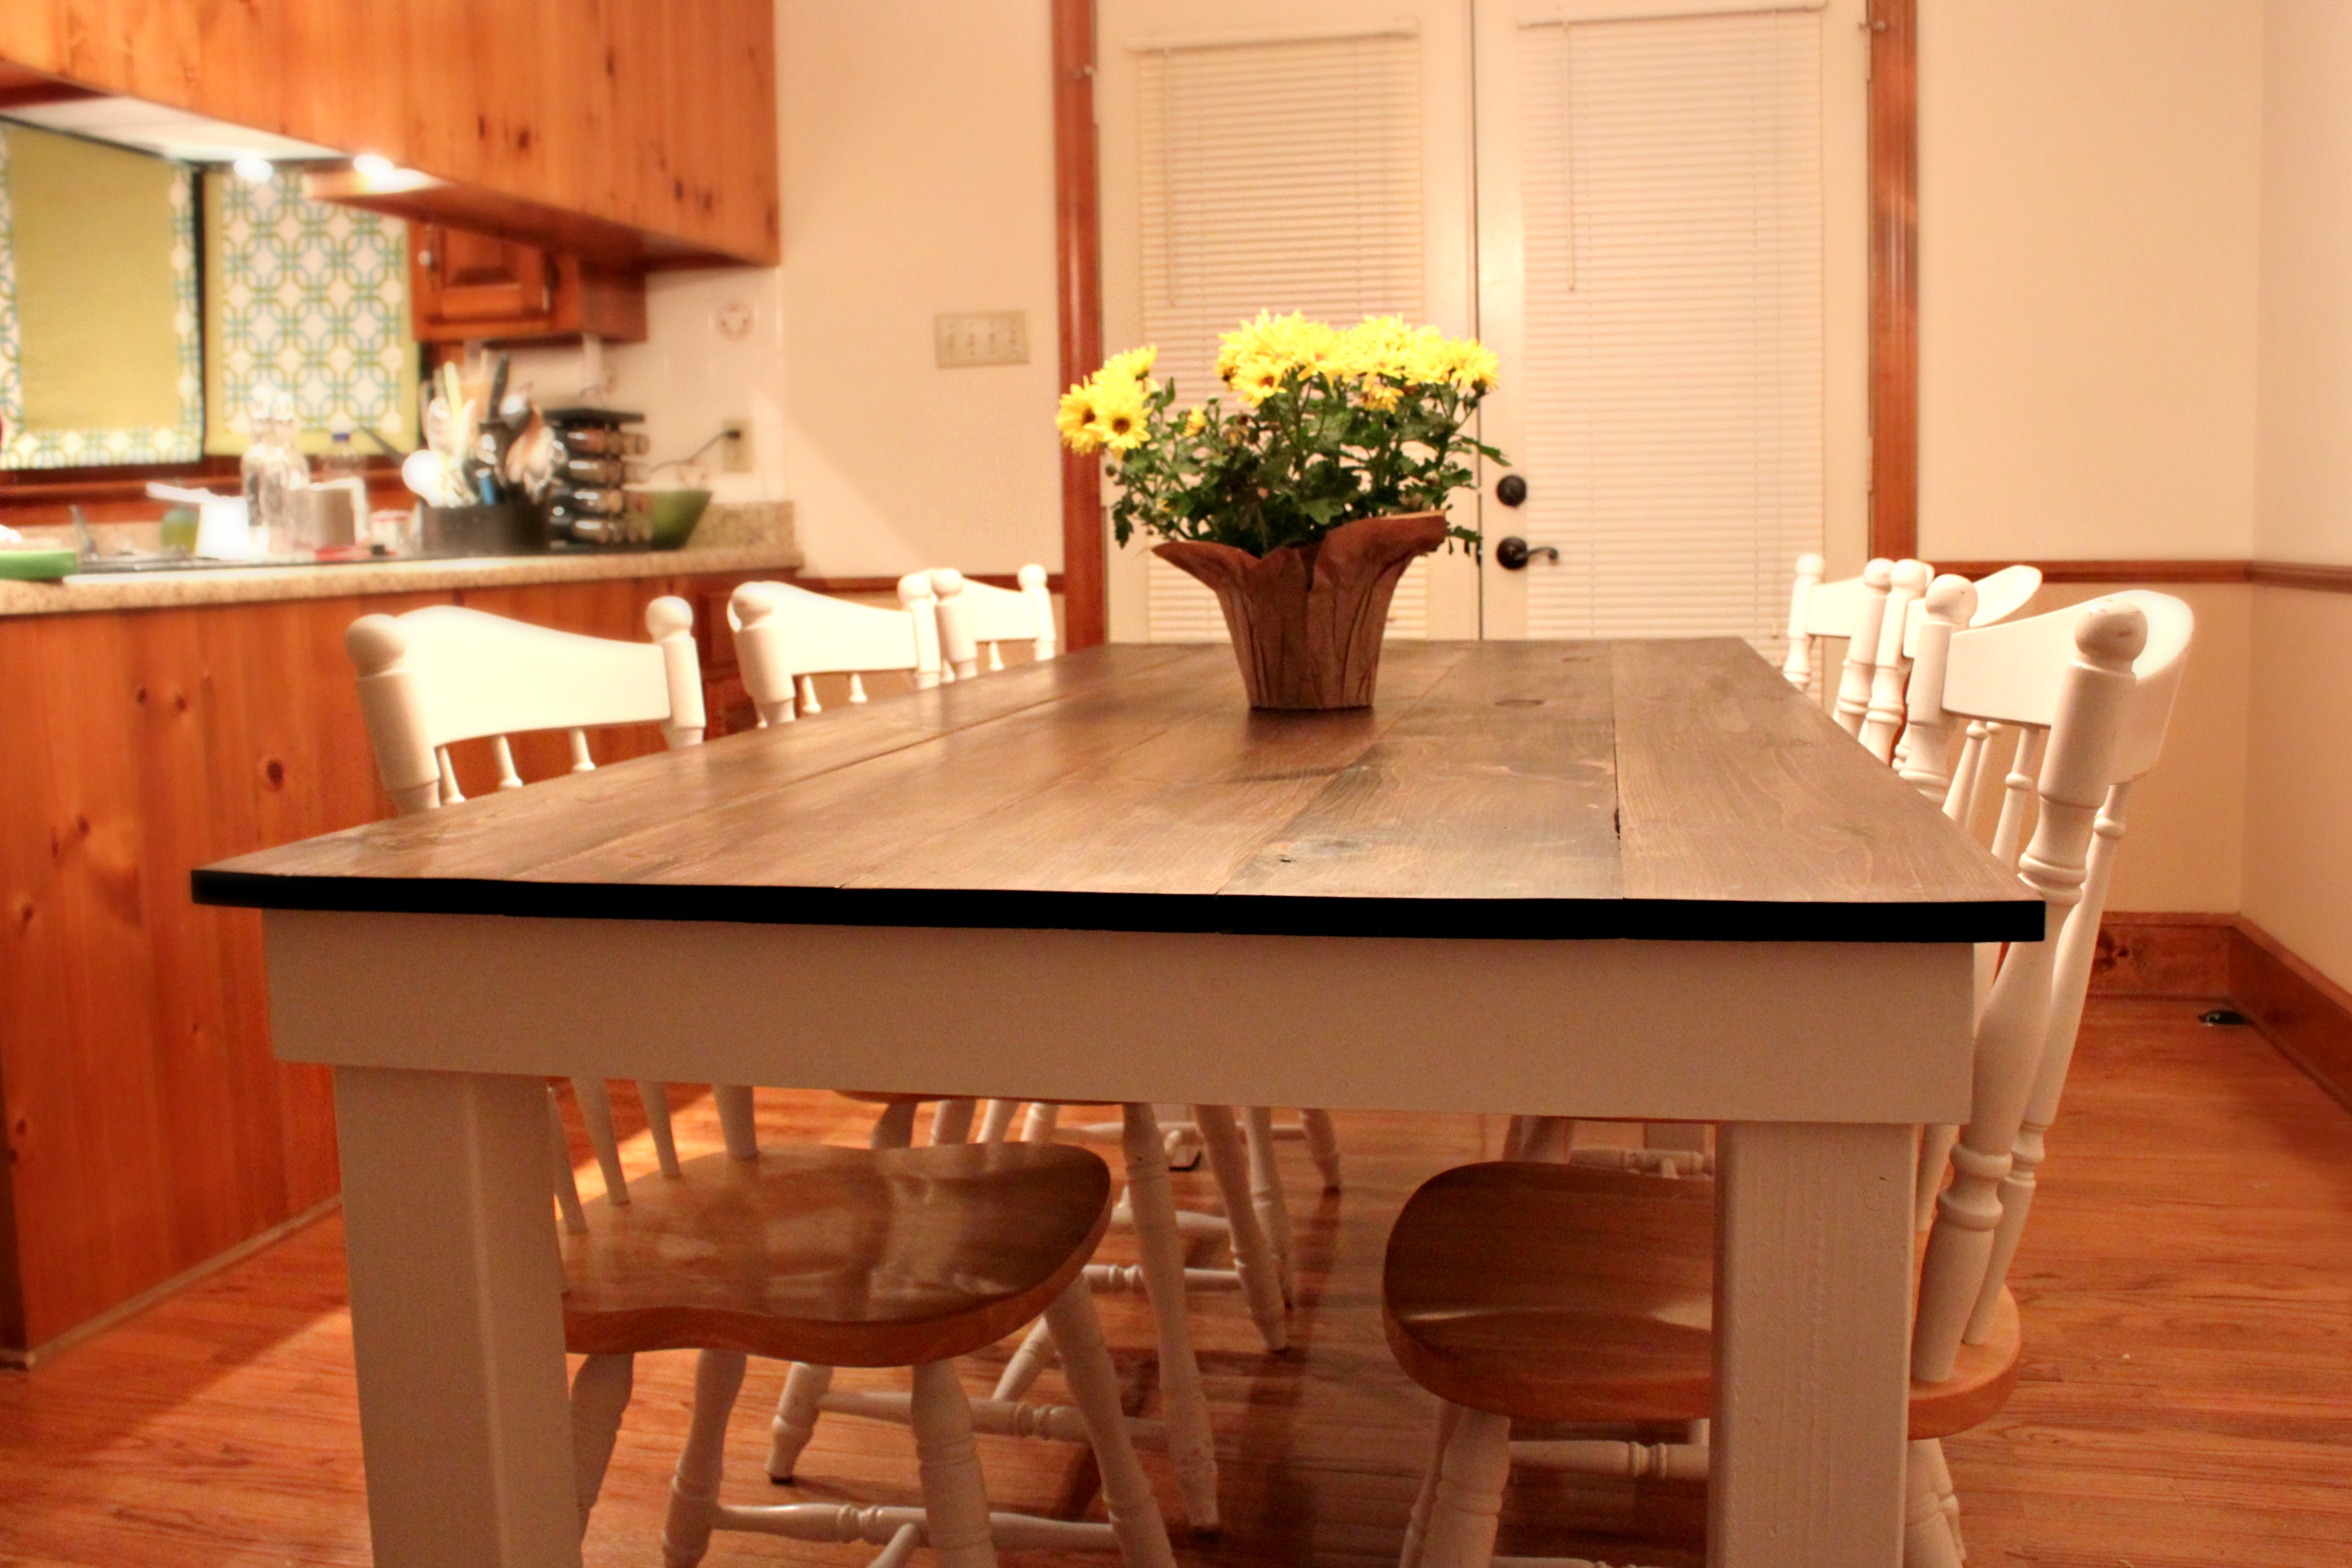 Картинки кухонного стола. Стол на кухню. Большой стол на кухню. Кухонный стол на кухне. Необычные кухонные столы.